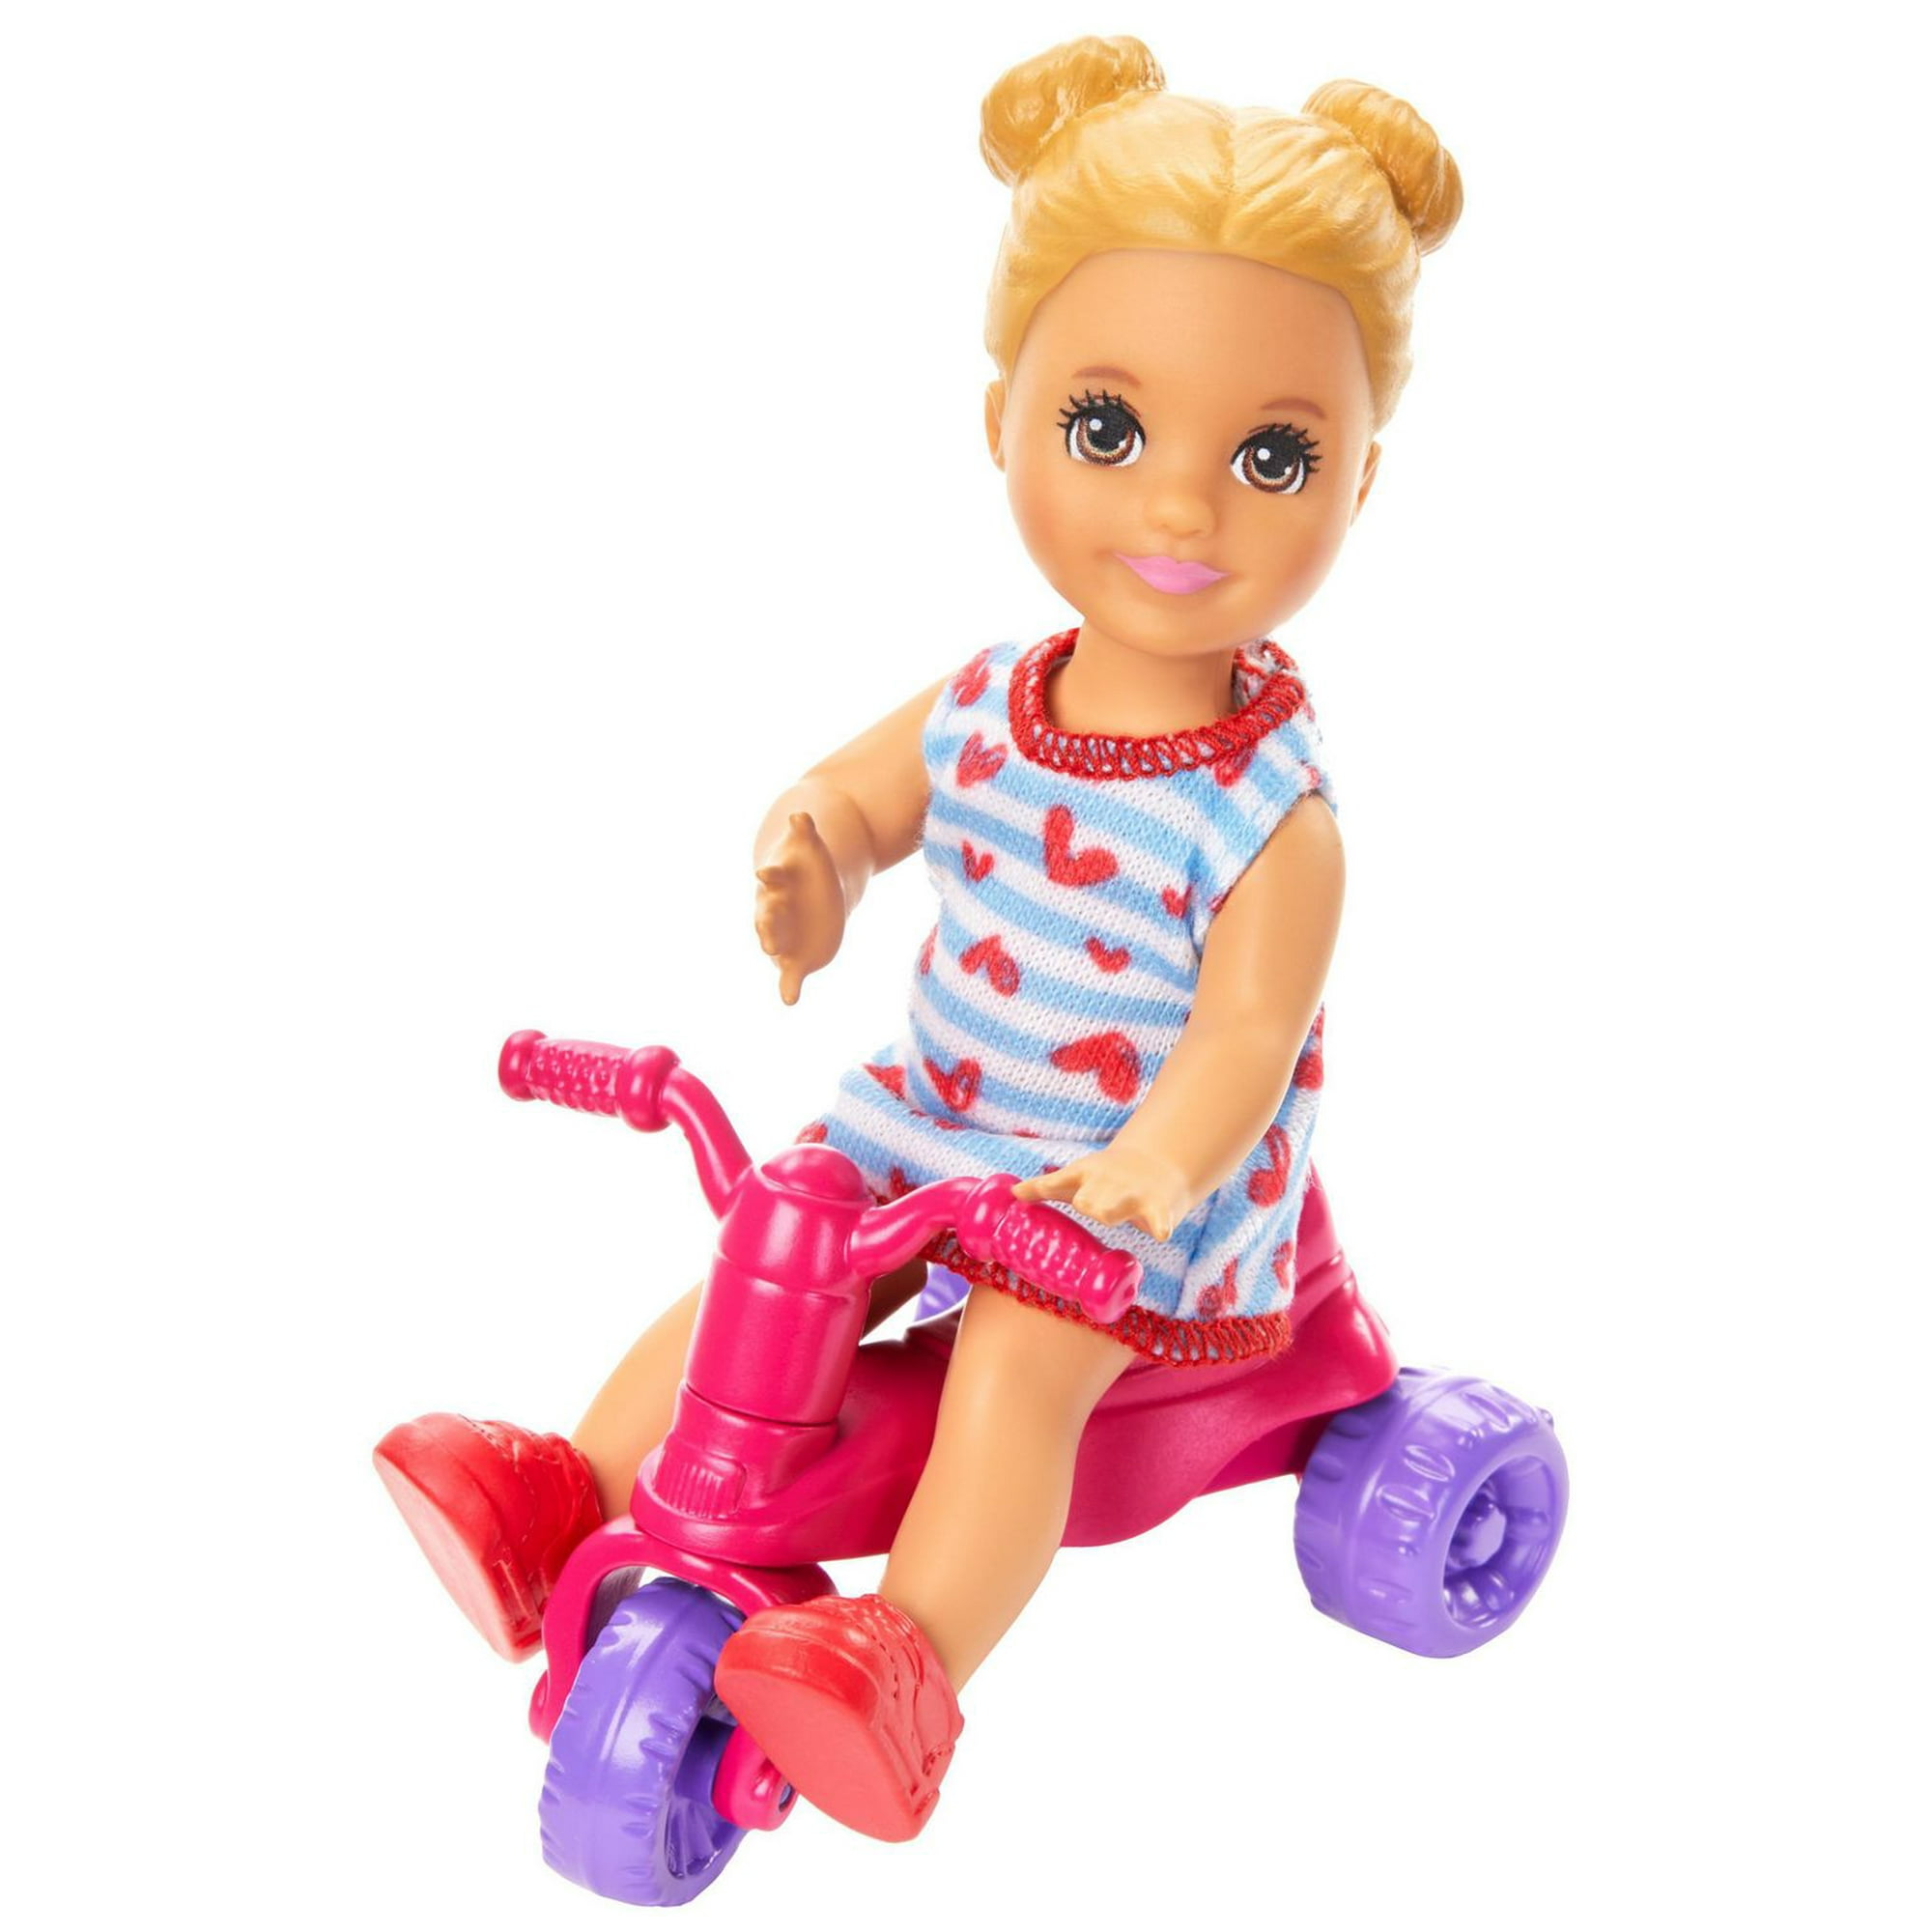 Barbie Skipper Babysitters Inc. Doll & Baby Feeding Doll Playset